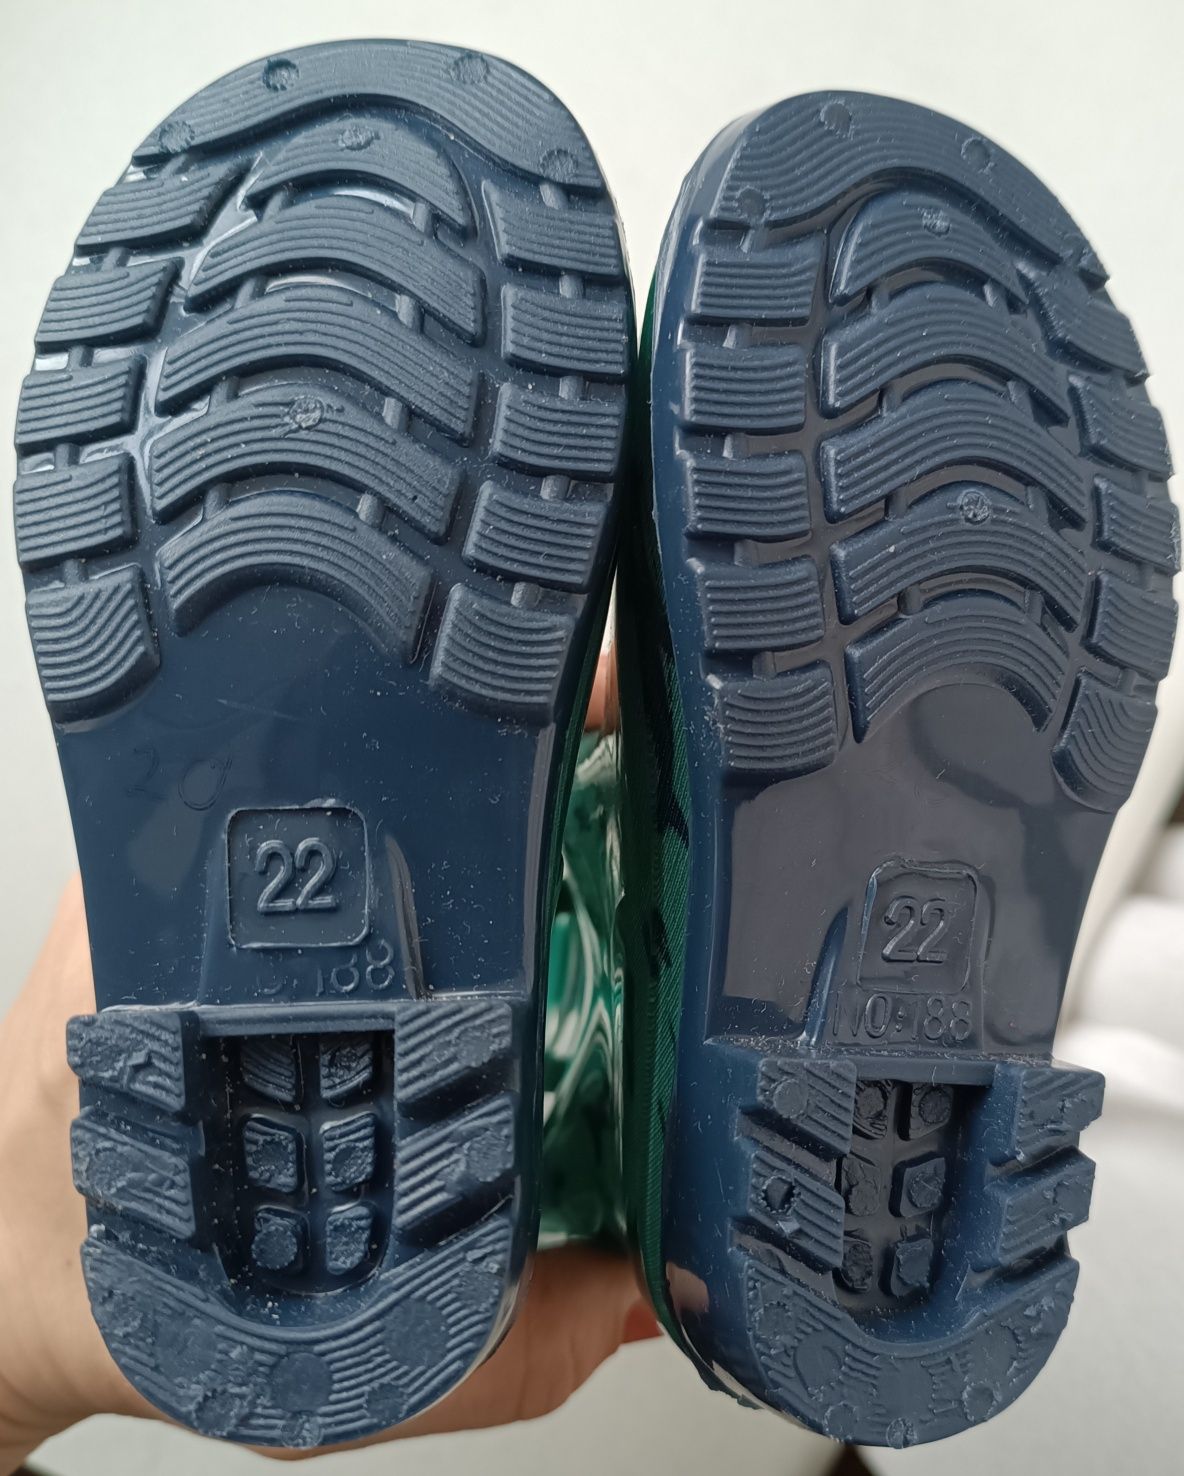 Нові гумові дитячі чоботи польського бренду PEPCO